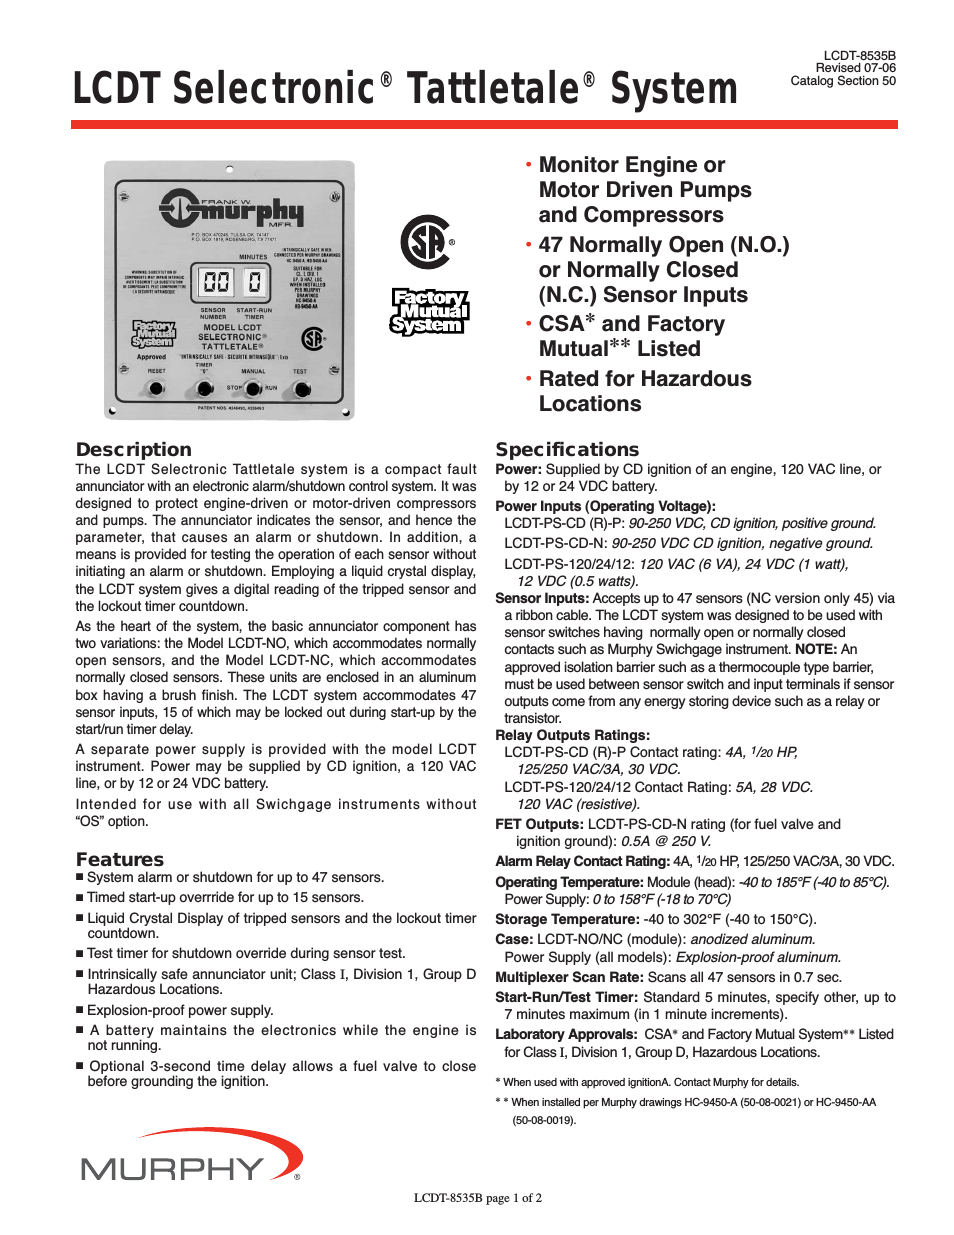 LCDT Selectronic Tattletale System LCDT-8535B